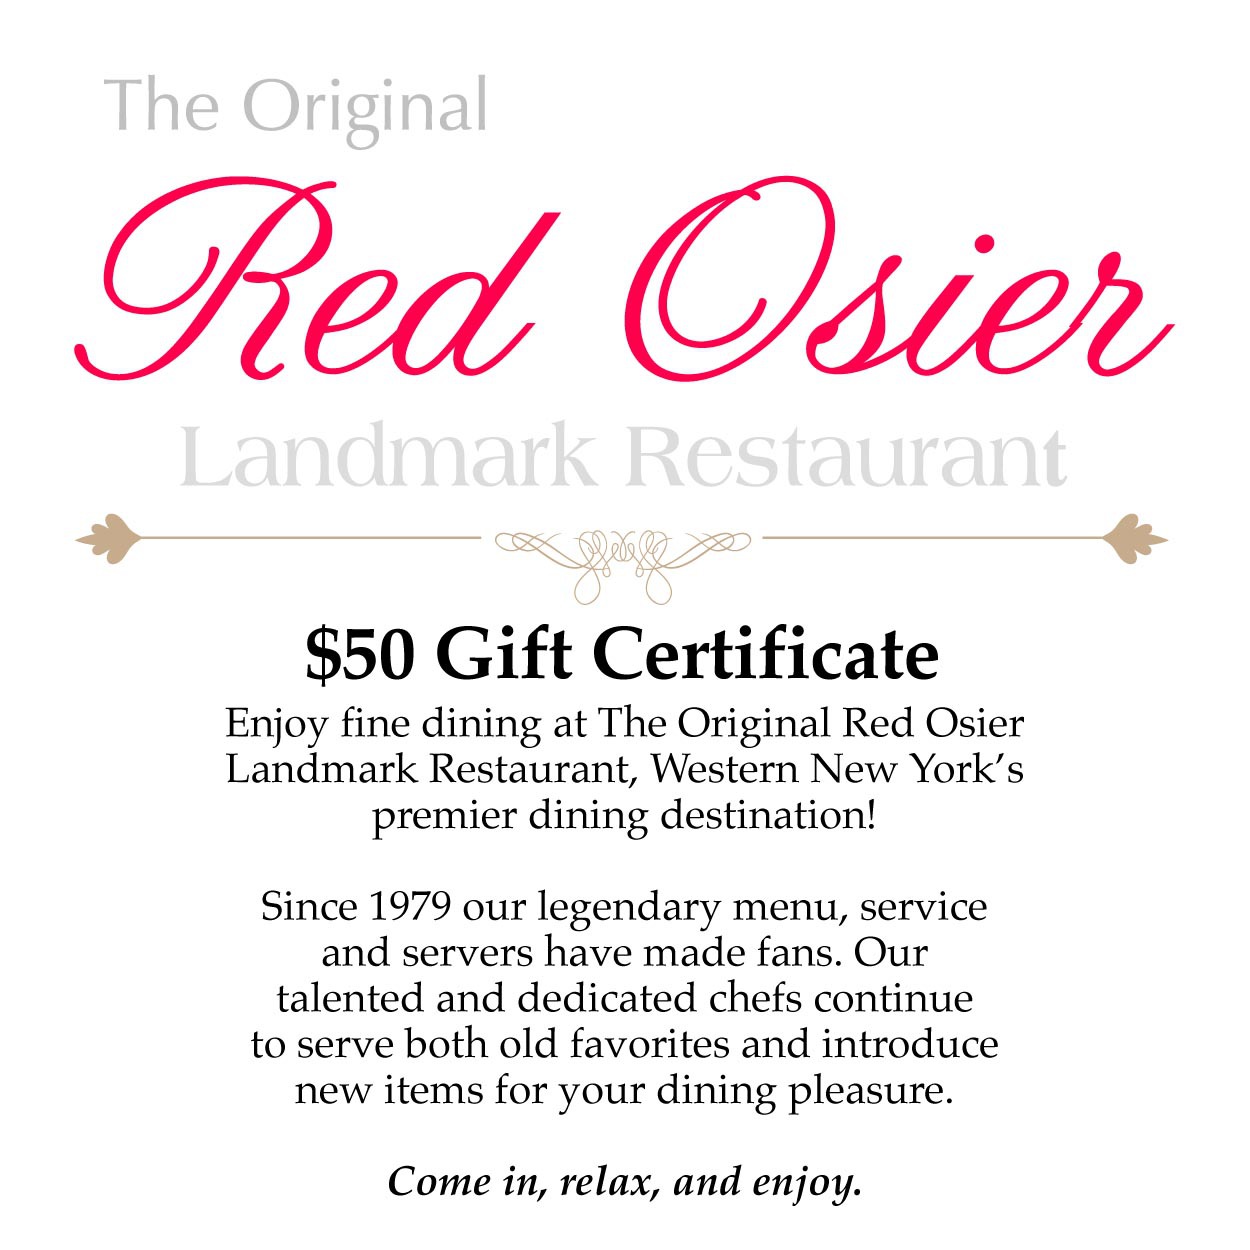 $50 Gift Certificate - The Red Osier Landmark Restaurant